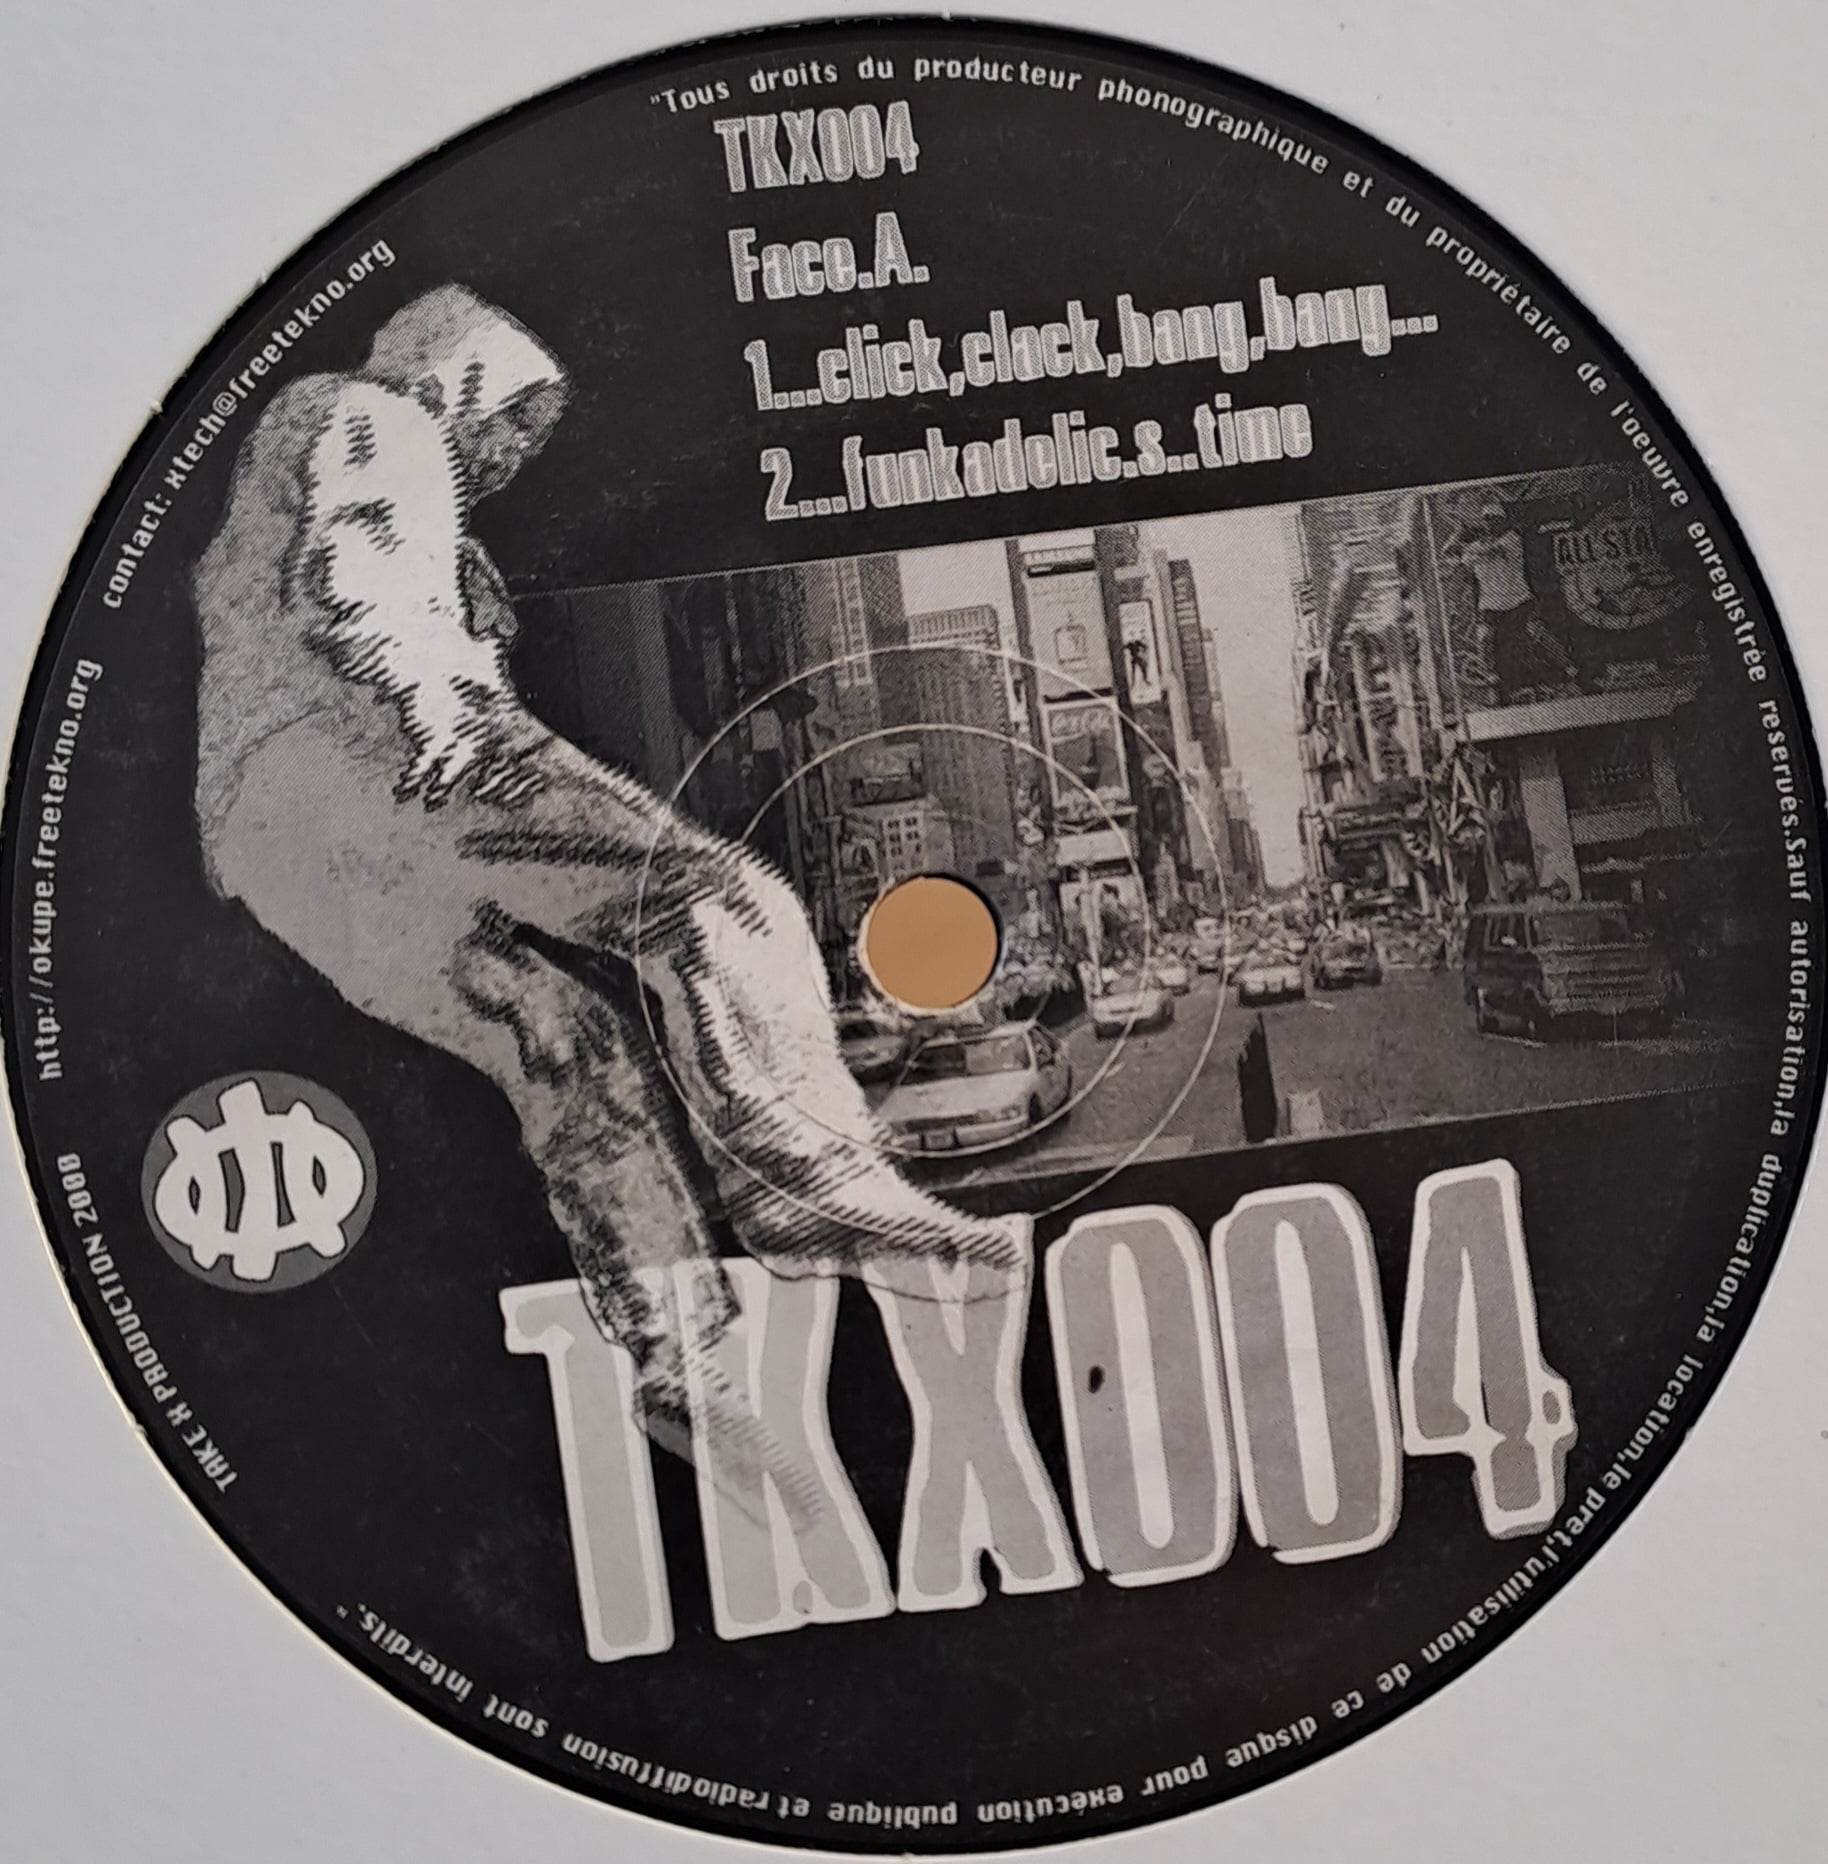 Take X Production 04 - vinyle freetekno